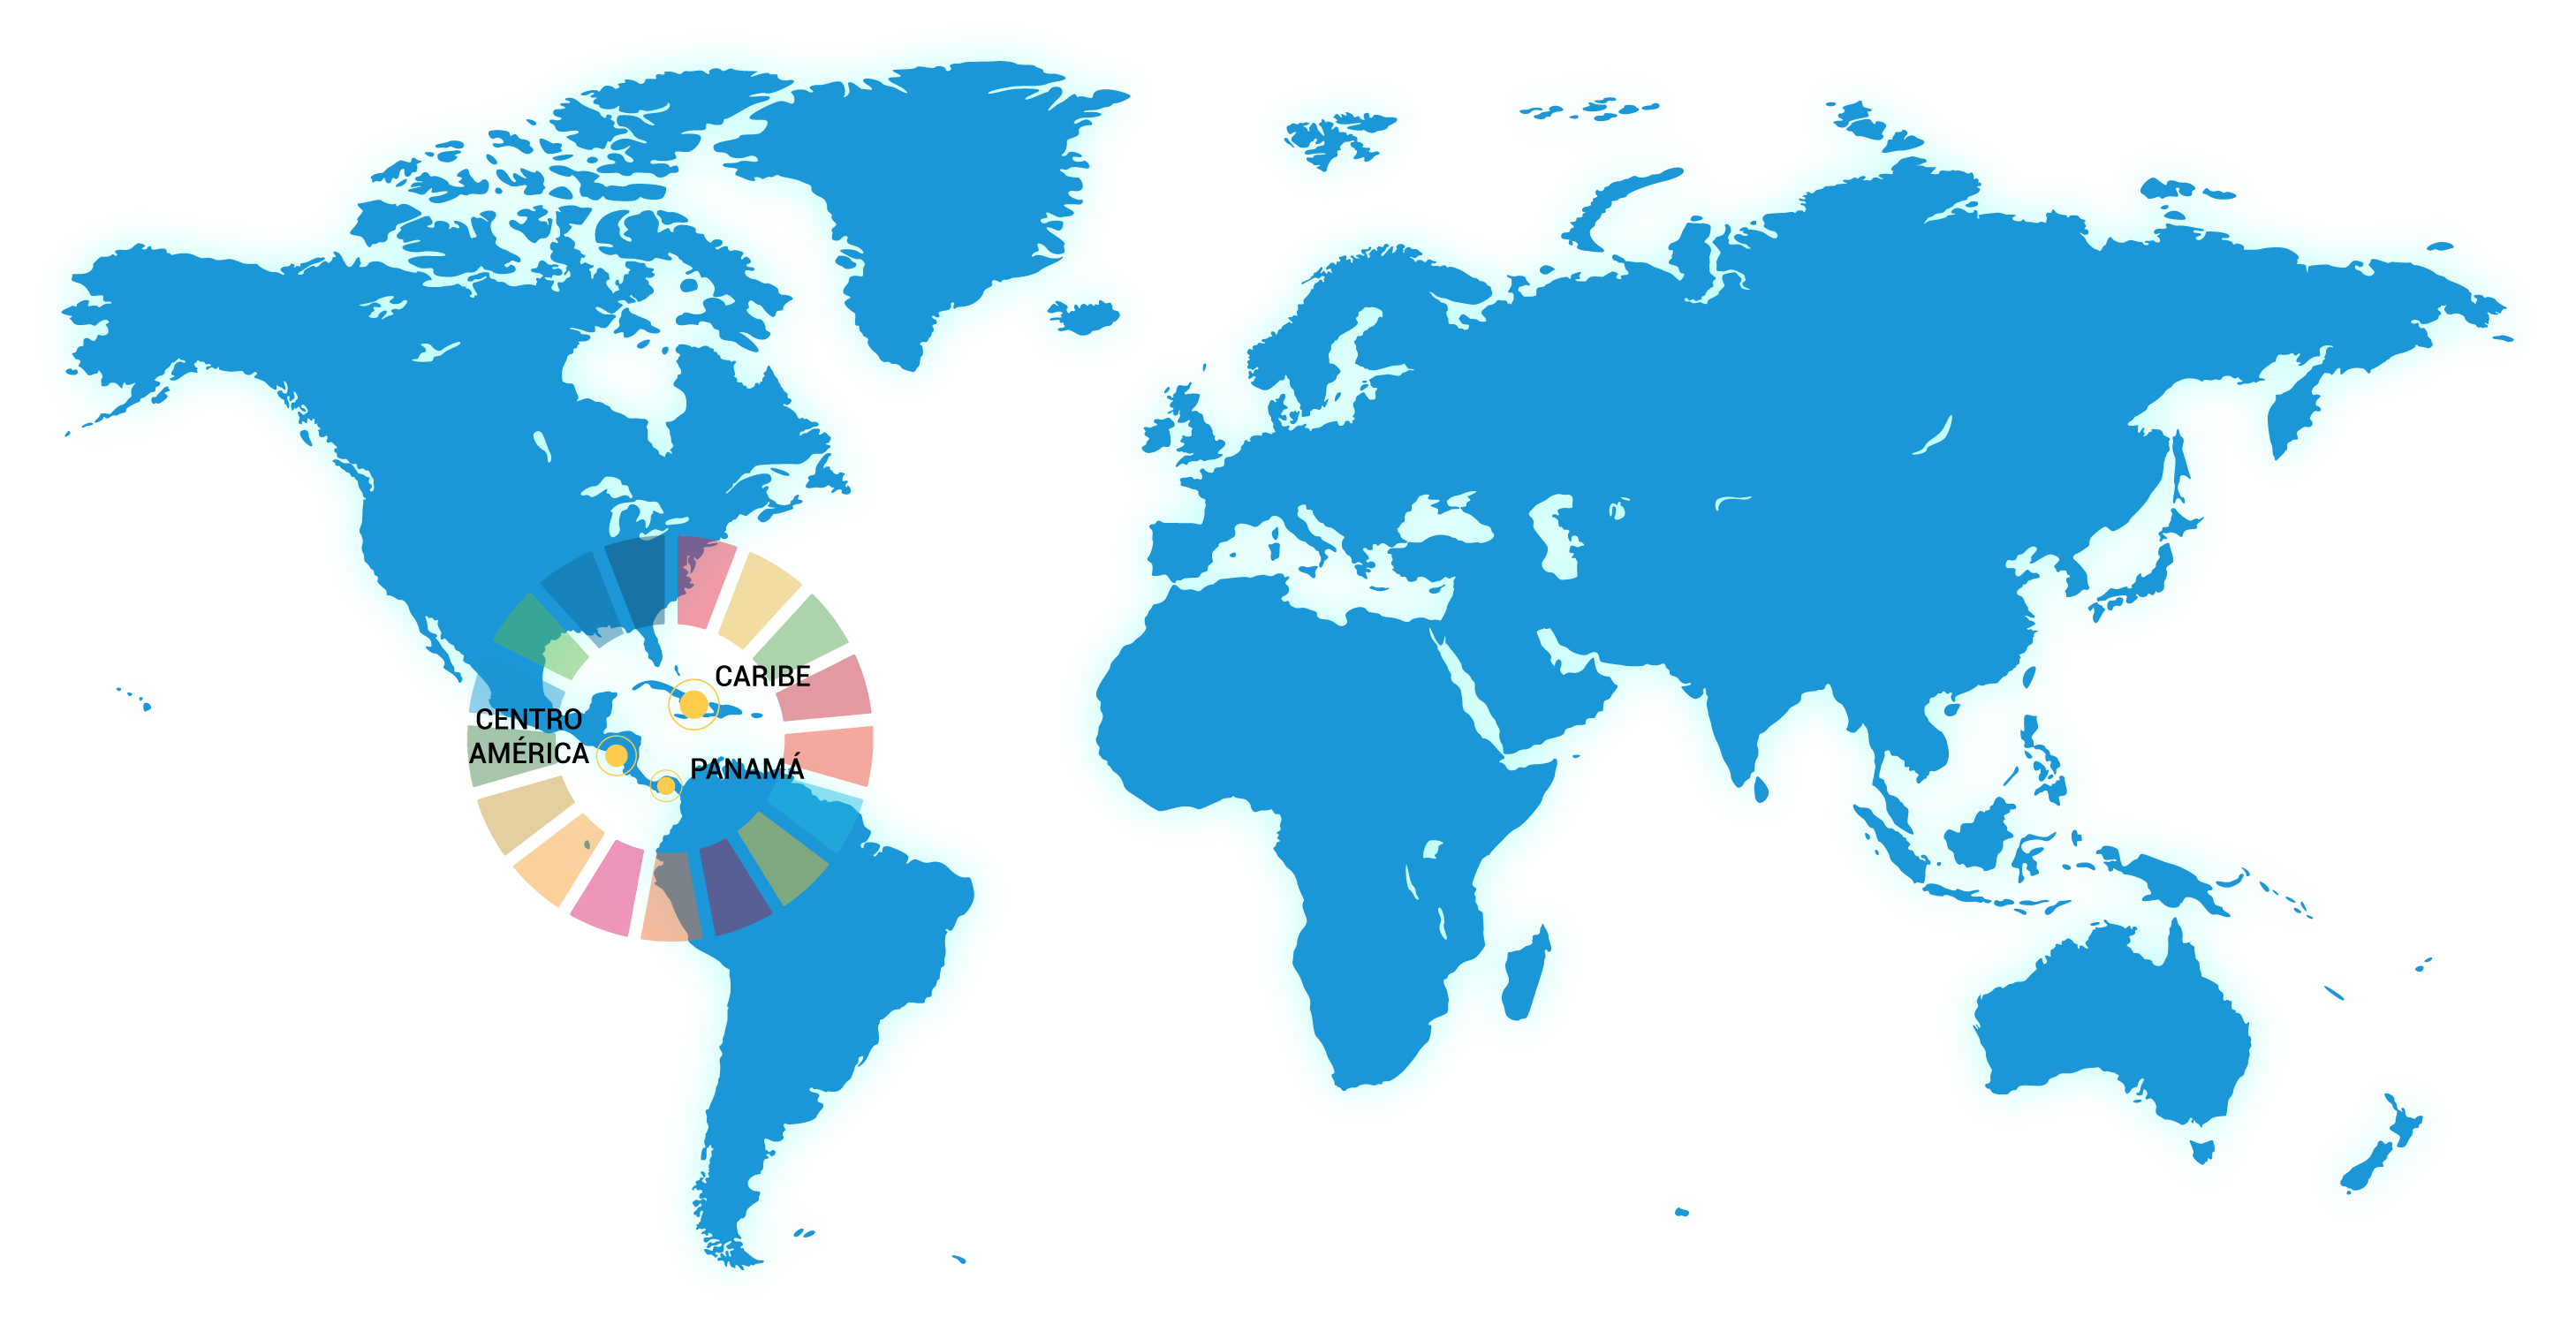 Mapa del mundo señalando la región de América Central y el Caribe